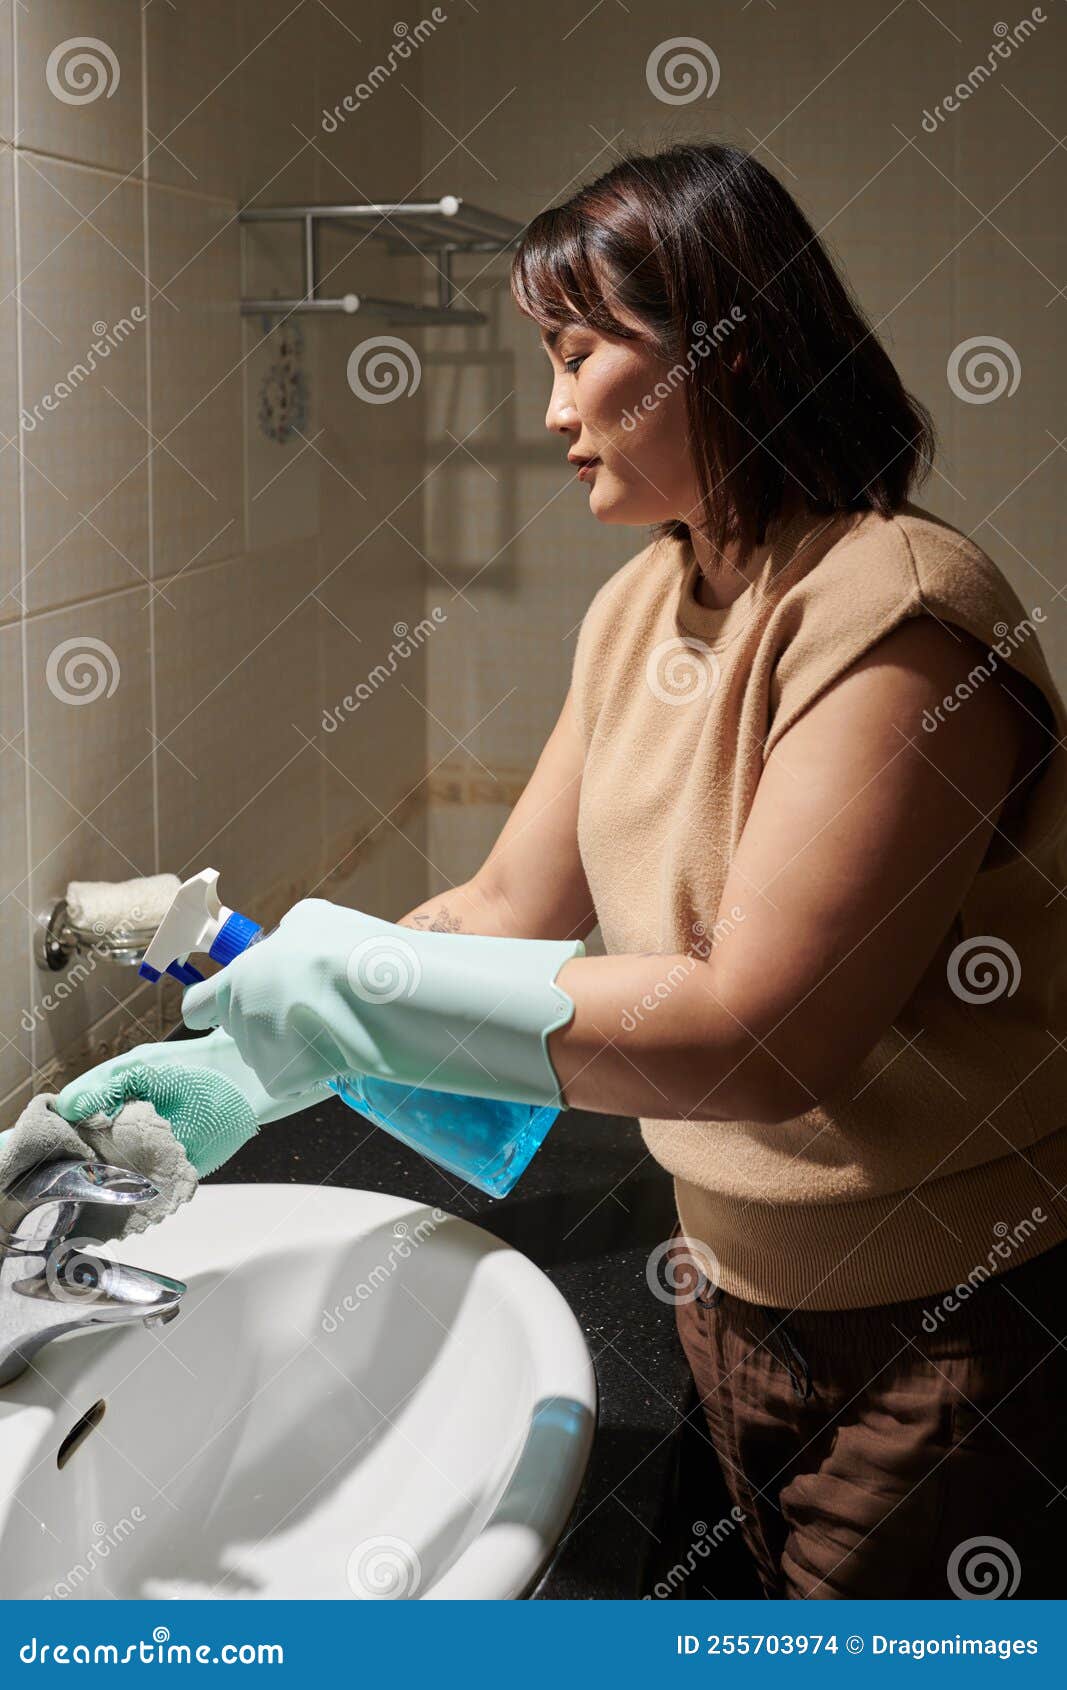 asiatique femme au foyer avec nettoyage tissu et vaporisateur